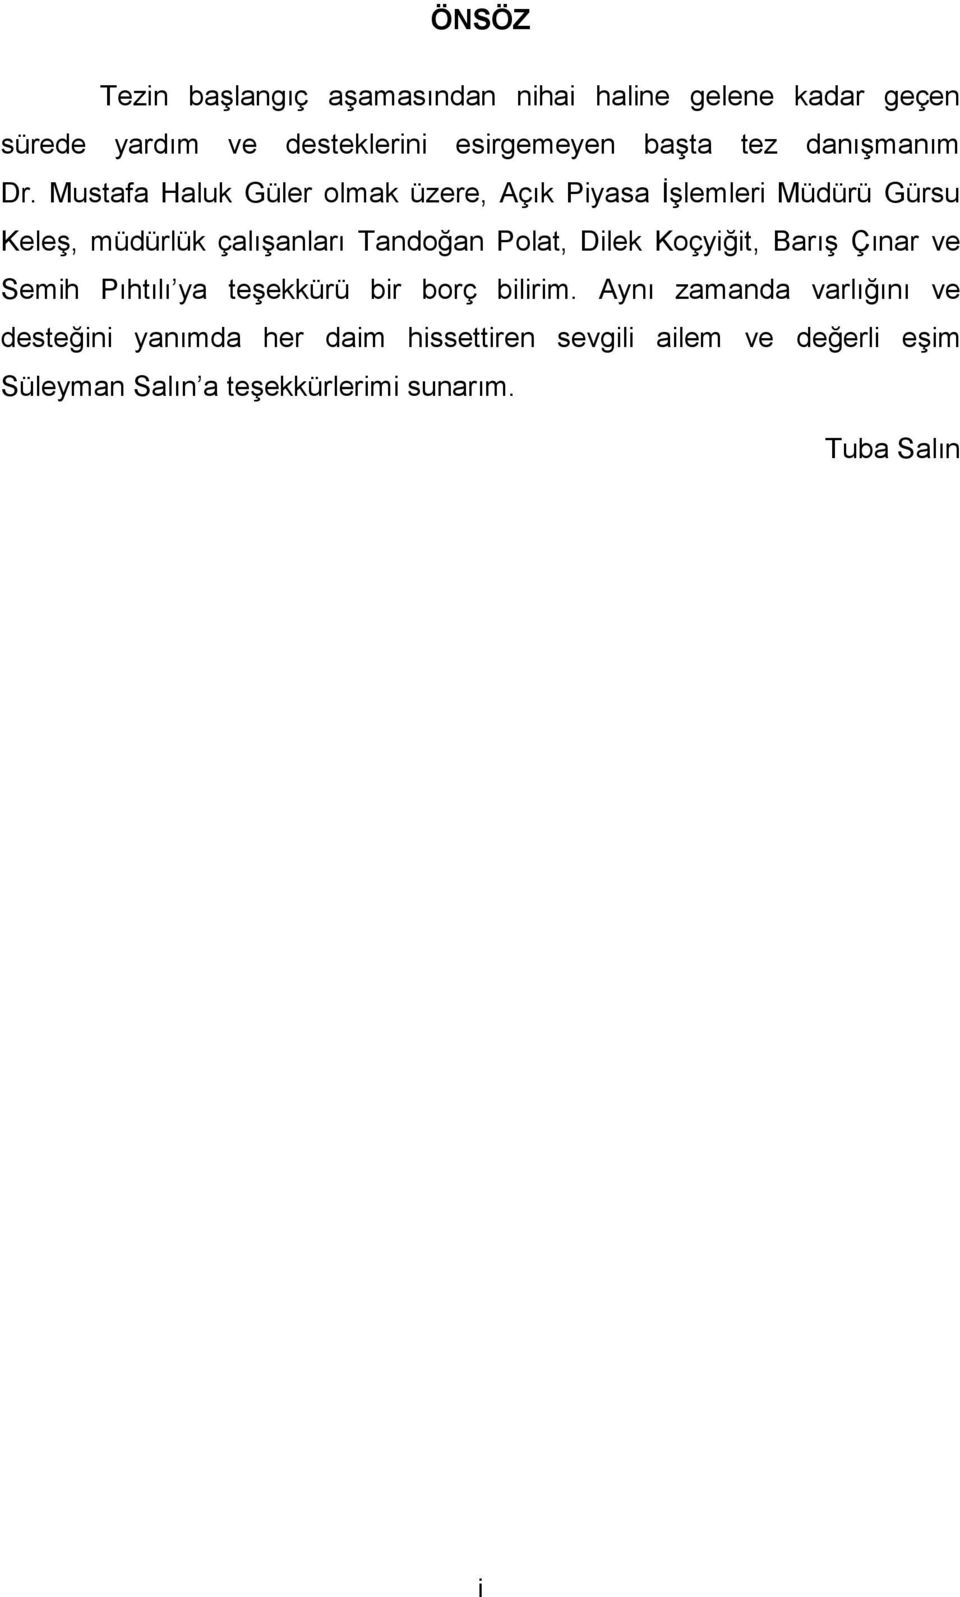 Mustafa Haluk Güler olmak üzere, Açık Piyasa İşlemleri Müdürü Gürsu Keleş, müdürlük çalışanları Tandoğan Polat, Dilek